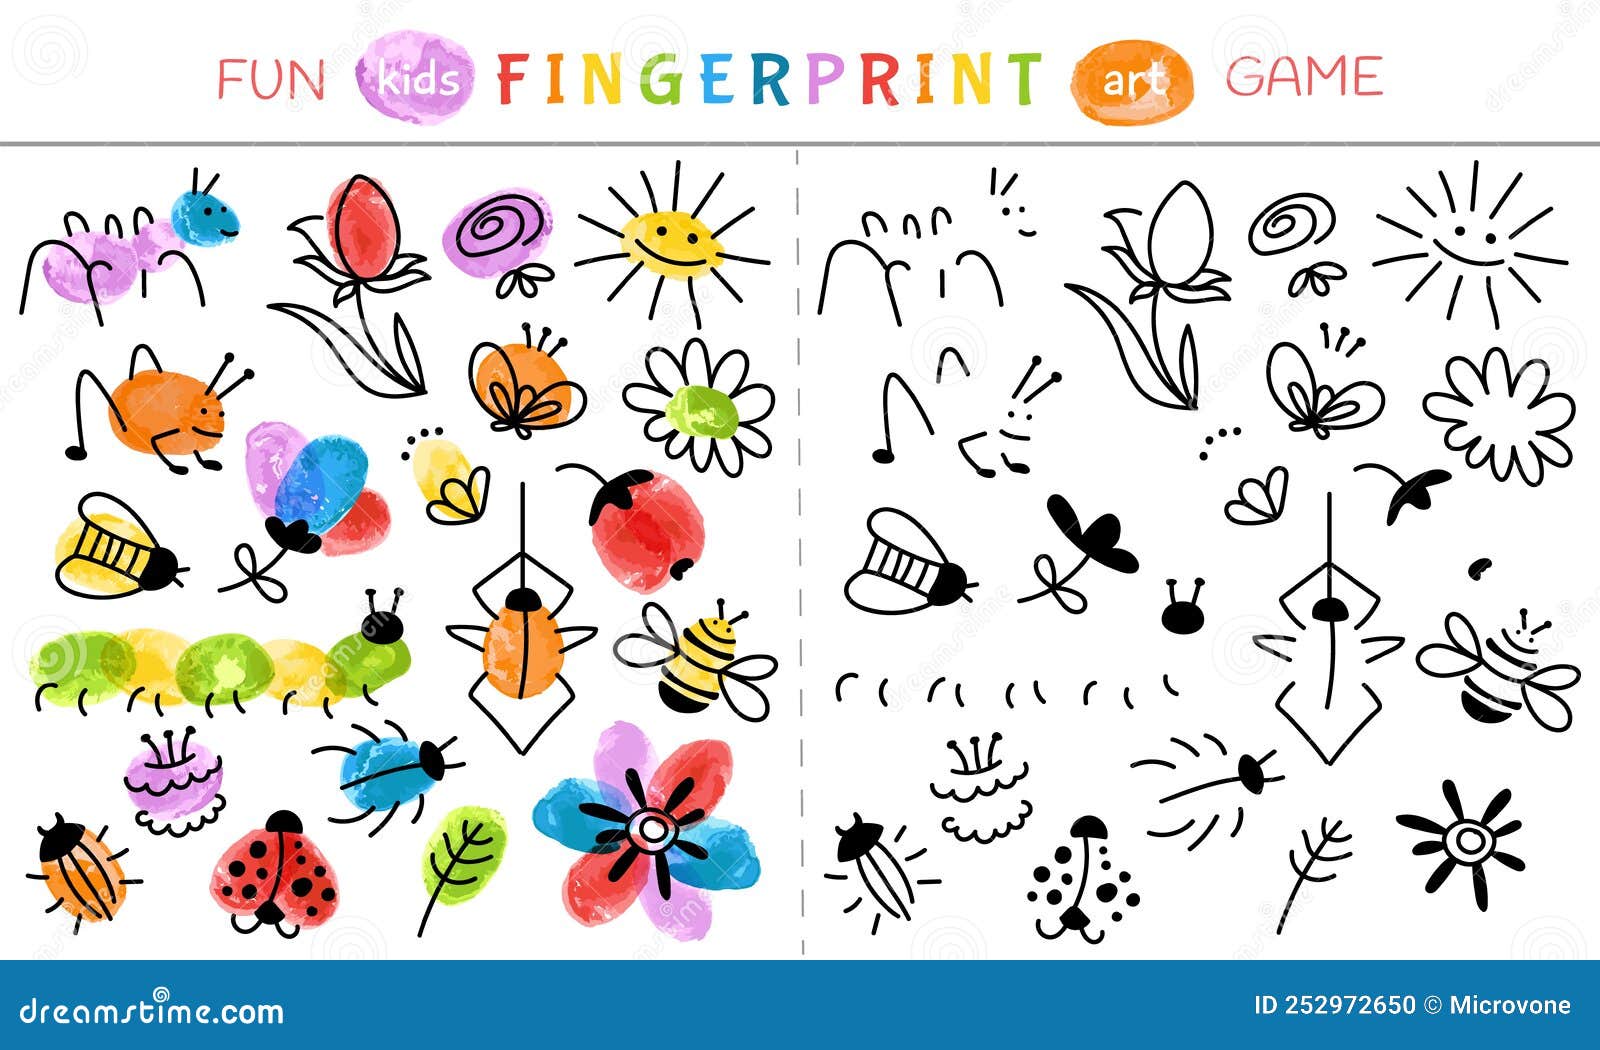 Jogo De Impressões Digitais. Pintura De Bebês Com Dedos